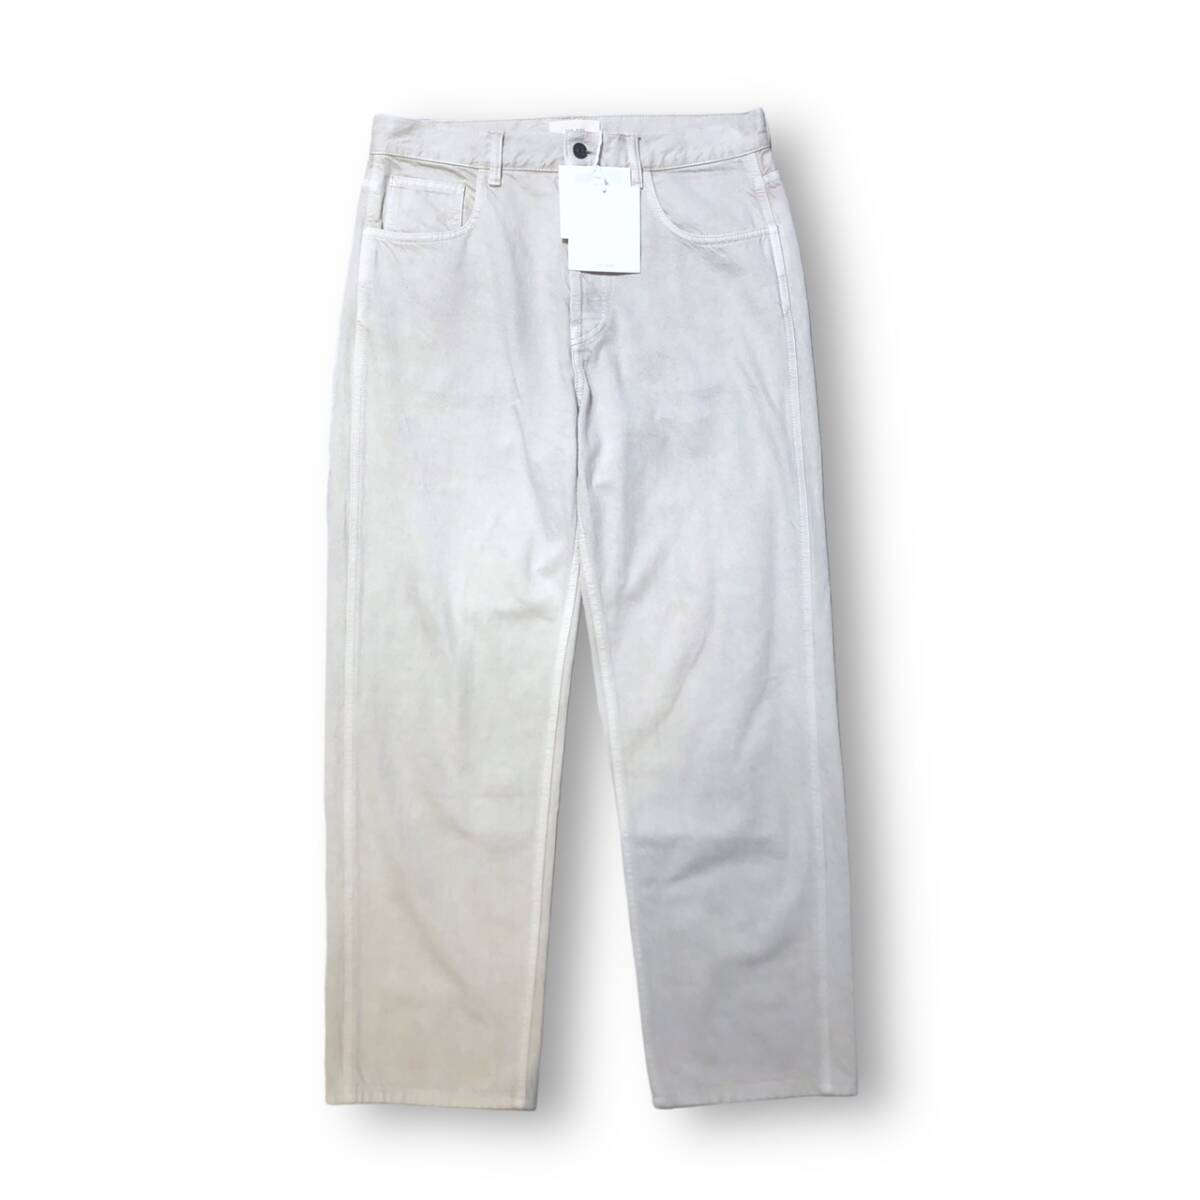 THE ROW Cortland White Jeans コートランド ホワイト ジーンズ デニム パンツ SIZE 32 457-w2444 タグ付 ザロウ 店舗受取可_画像1